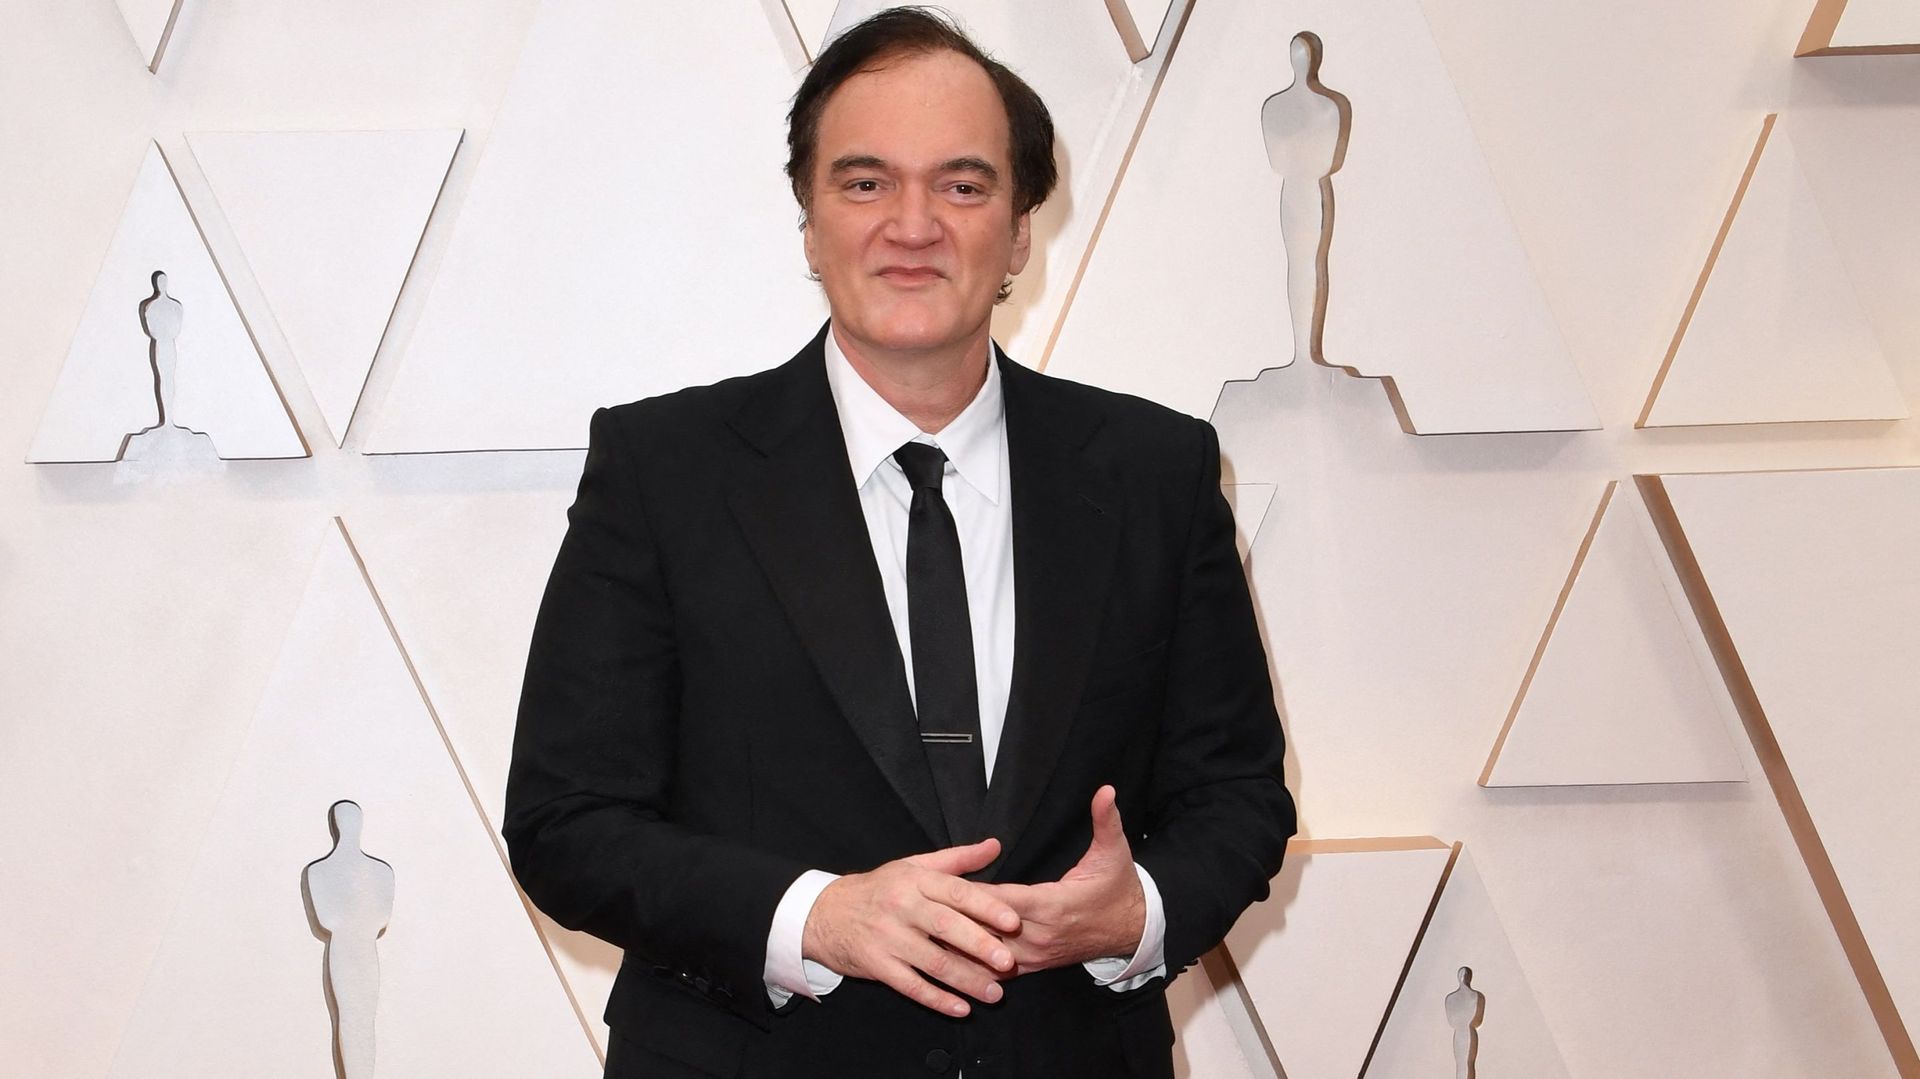 Le premier roman de Quentin Tarantino, "Il était une fois à Hollywood", adaptation libre de son film éponyme sorti en 2019, sera publié en France le 18 août.